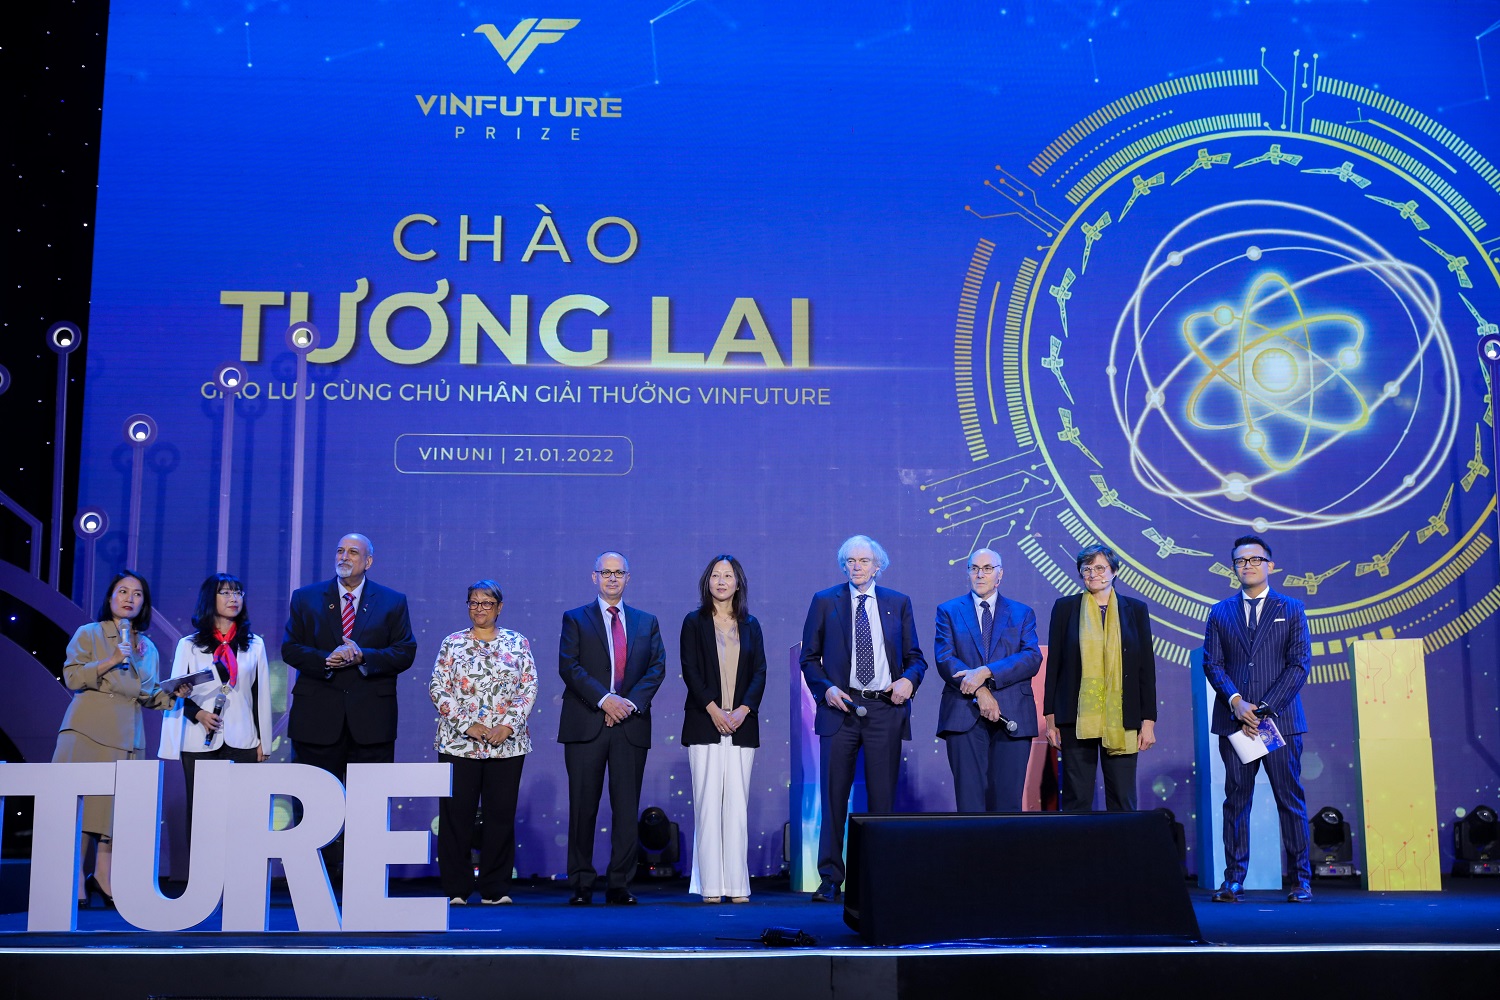 Kinh tế - Các nhà khoa học tầm cỡ thế giới hội tụ tại Việt Nam trong Tuần lễ Khoa học Công nghệ VinFuture 2022